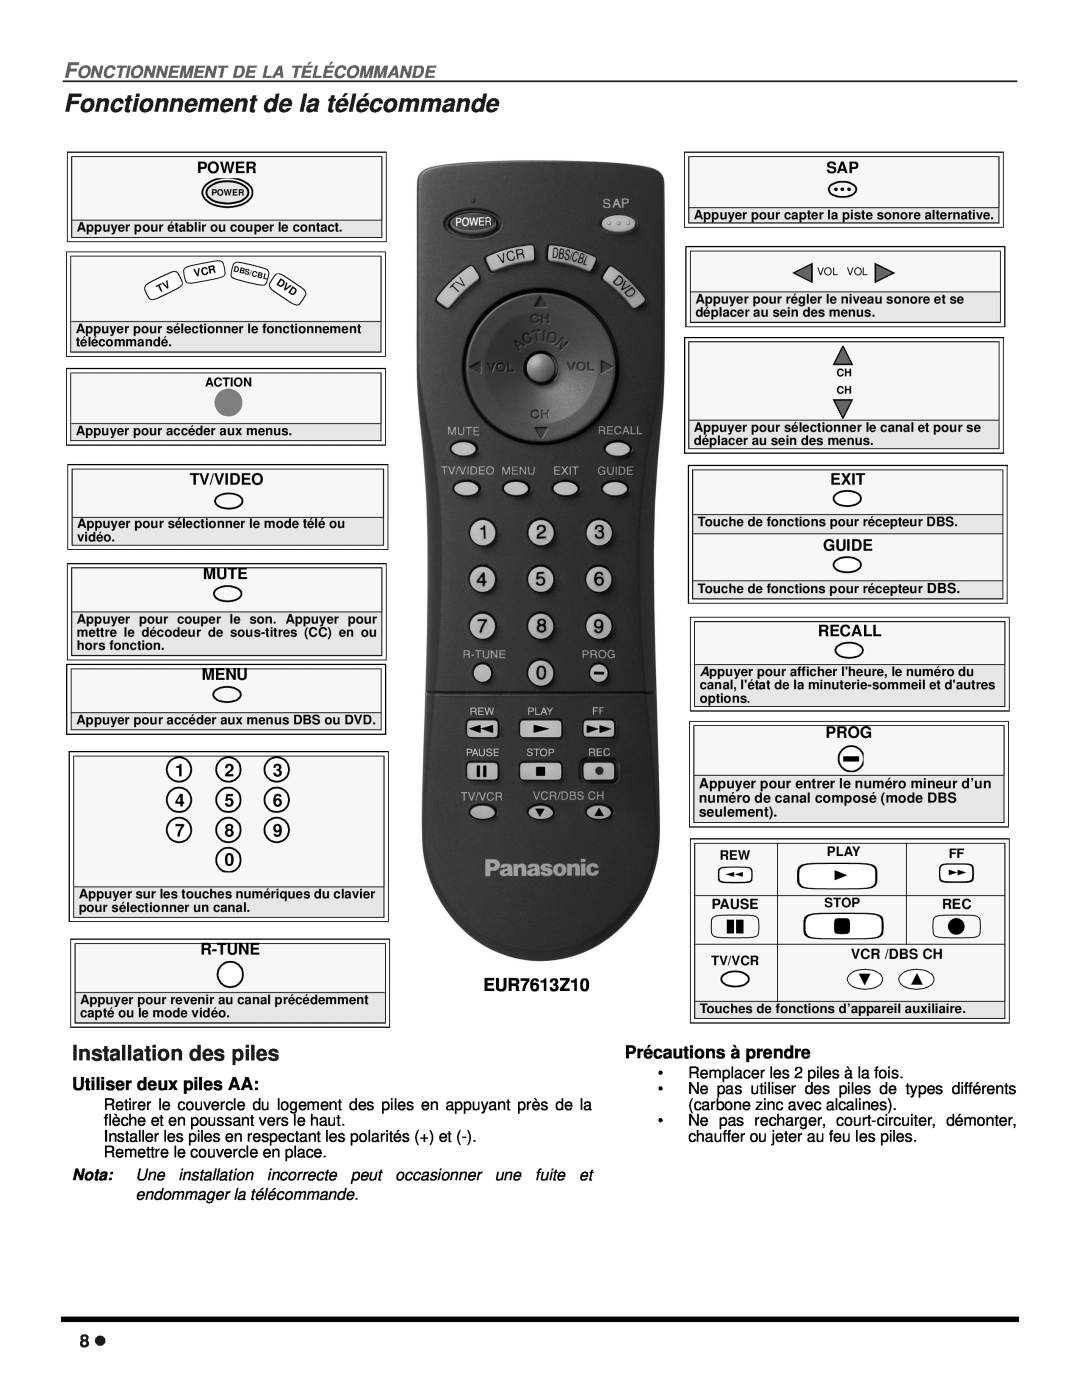 Panasonic CT 27SX12 Fonctionnement de la télécommande, Fonctionnement De La Télécommande, 1 2 4 5 7 8, EUR7613Z10 